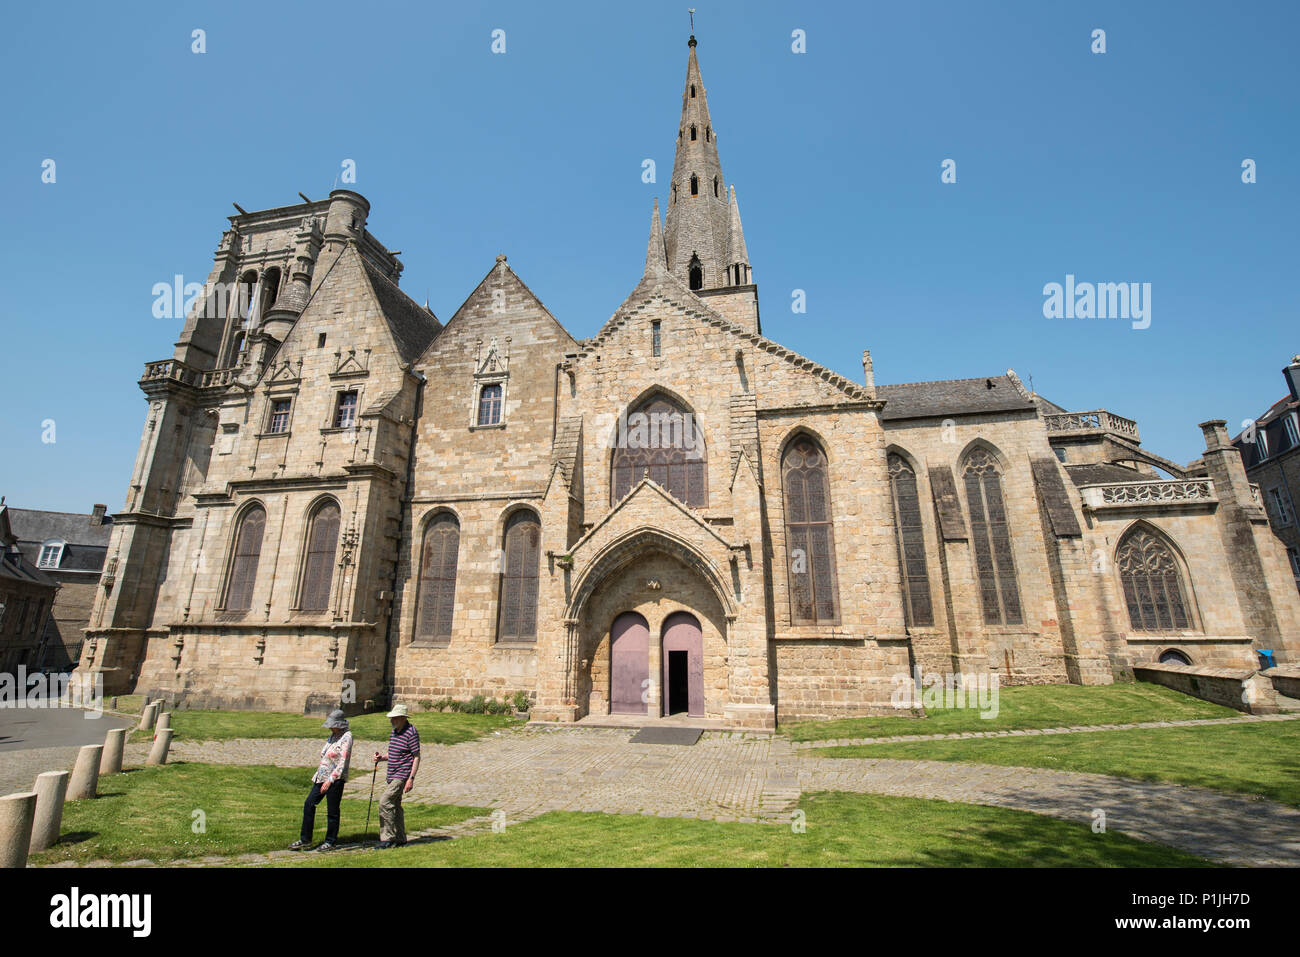 La Basilique Notre-Dame de Bon Secours ( Basilica of Our Lady of Good Help ), Guingamp, Côtes-d'Armor, Brittany, France Stock Photo